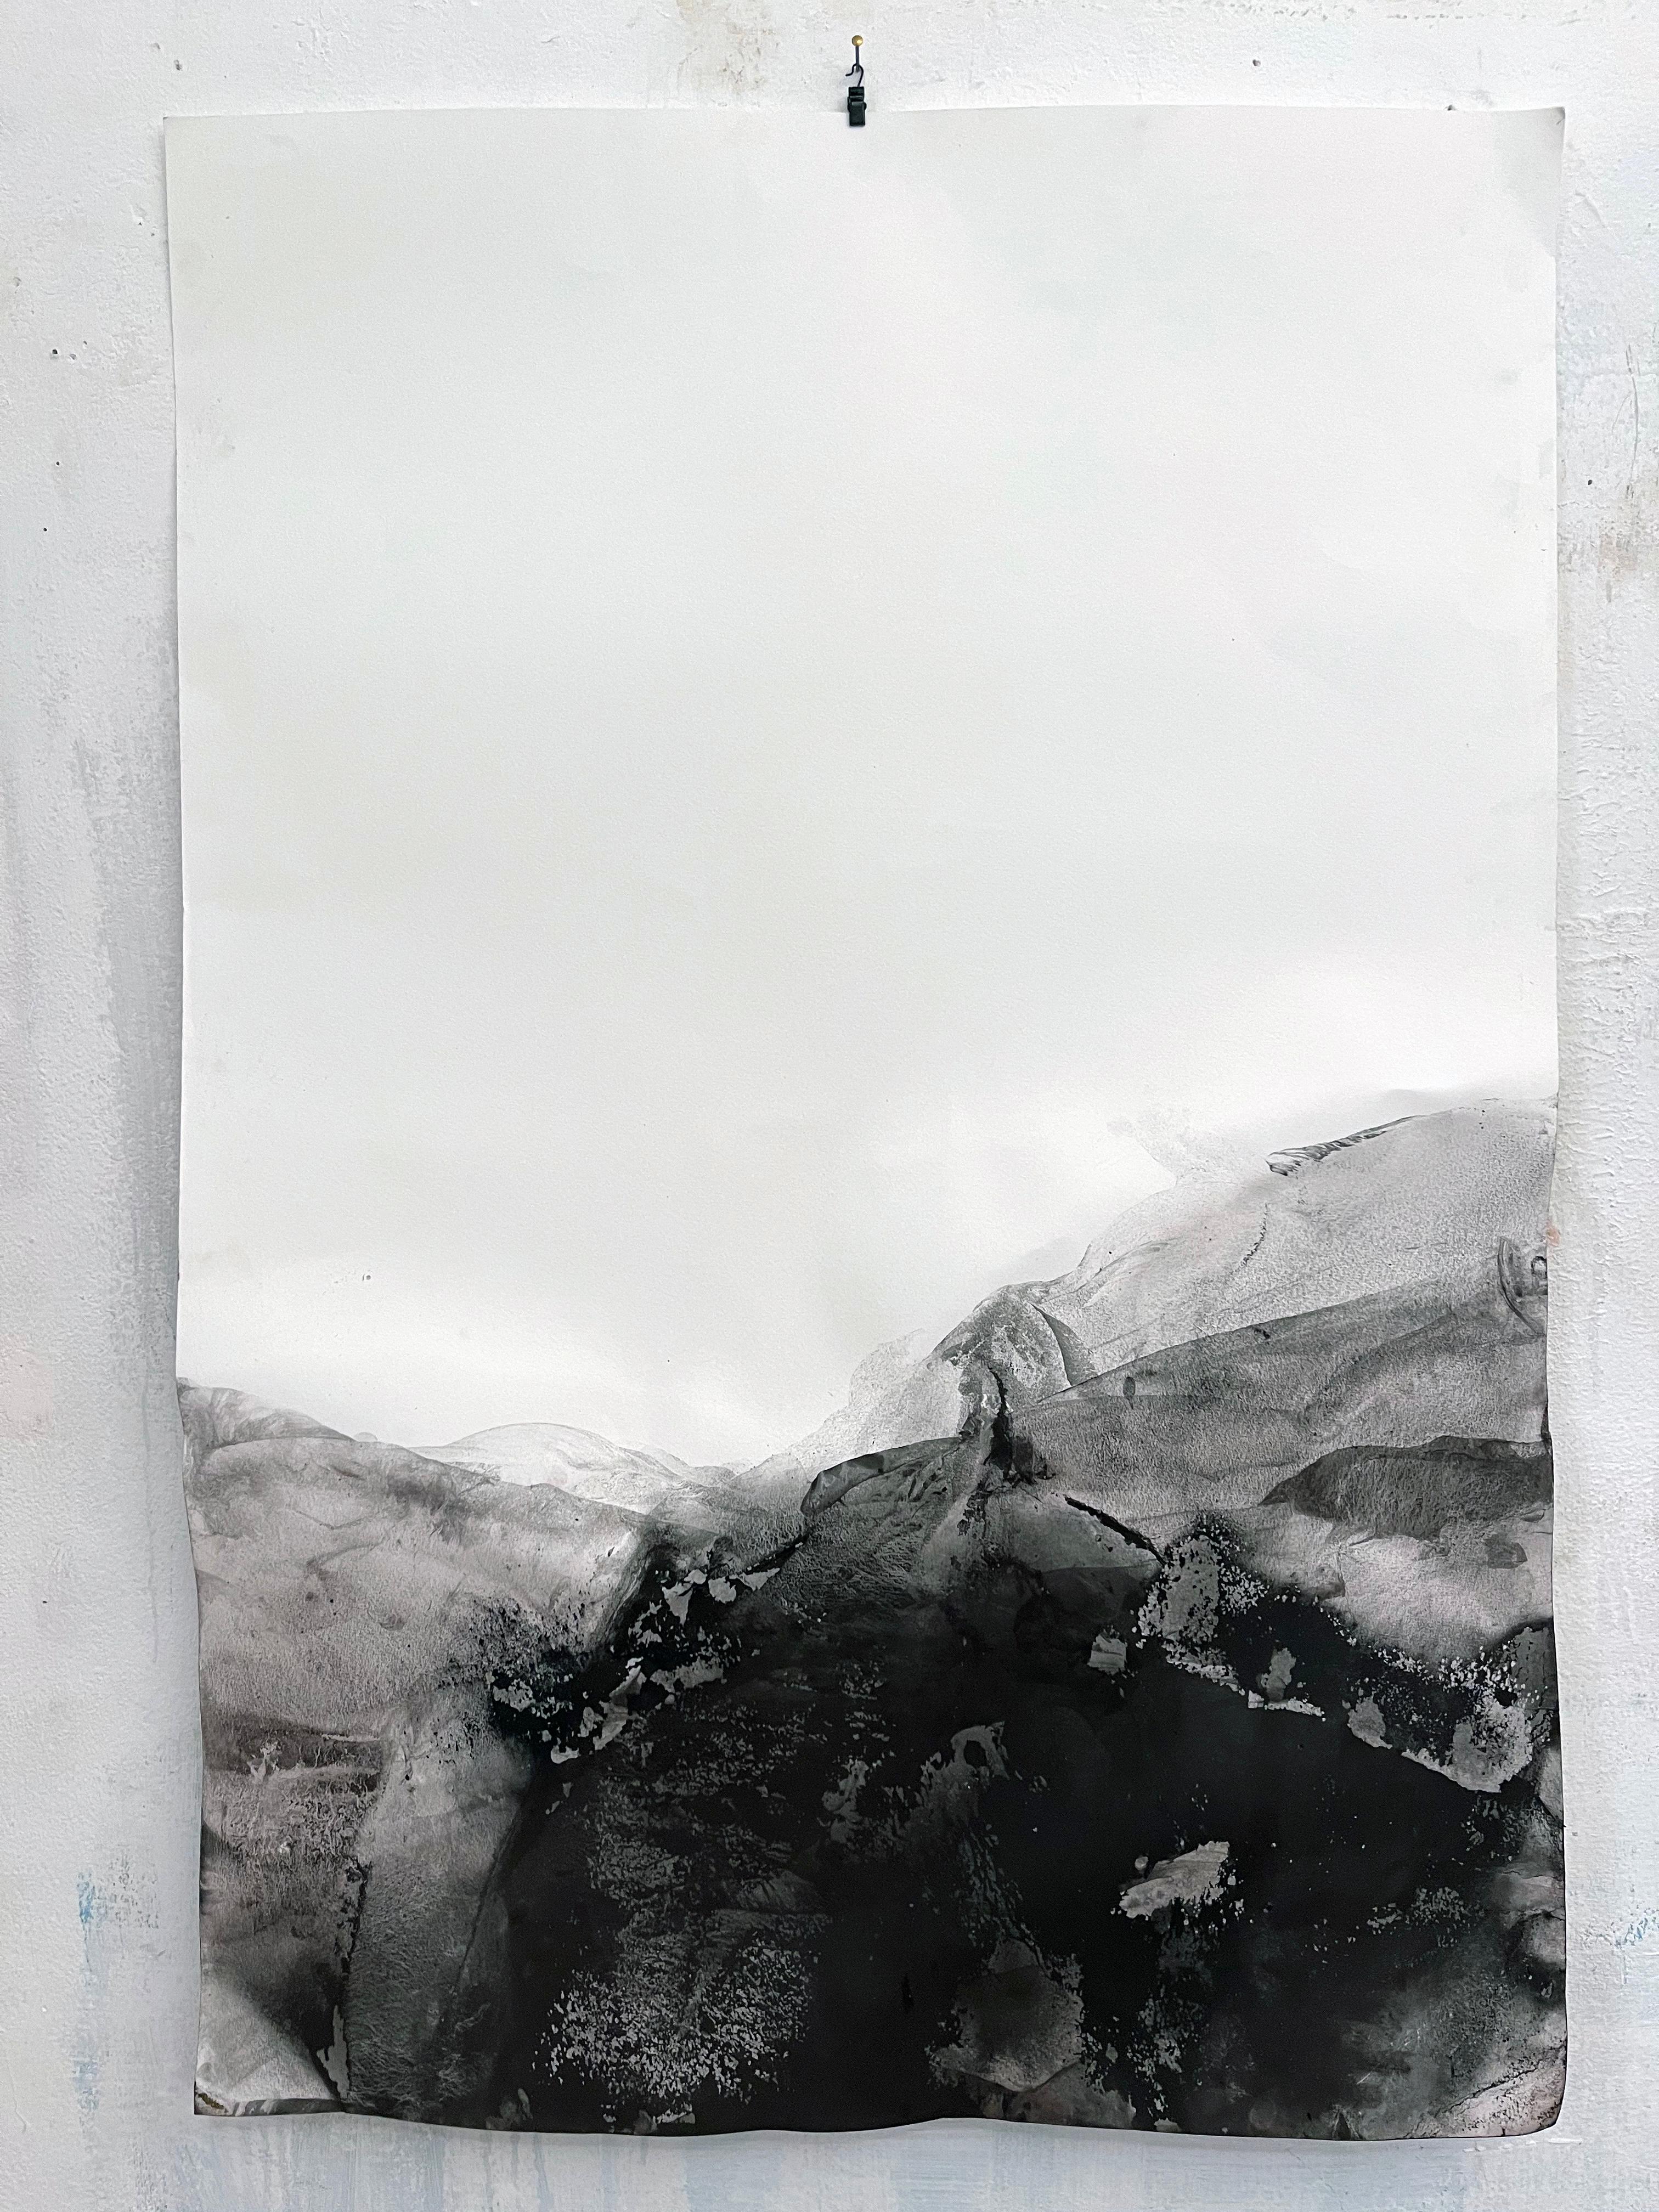 paysage
oxyde minéral sur papiers ( Canson Paper 300gr)
75 x110 cm
encadré TAILLE
92x122cm

cette peinture est publiée dans le catalogue de l'exposition personnelle
